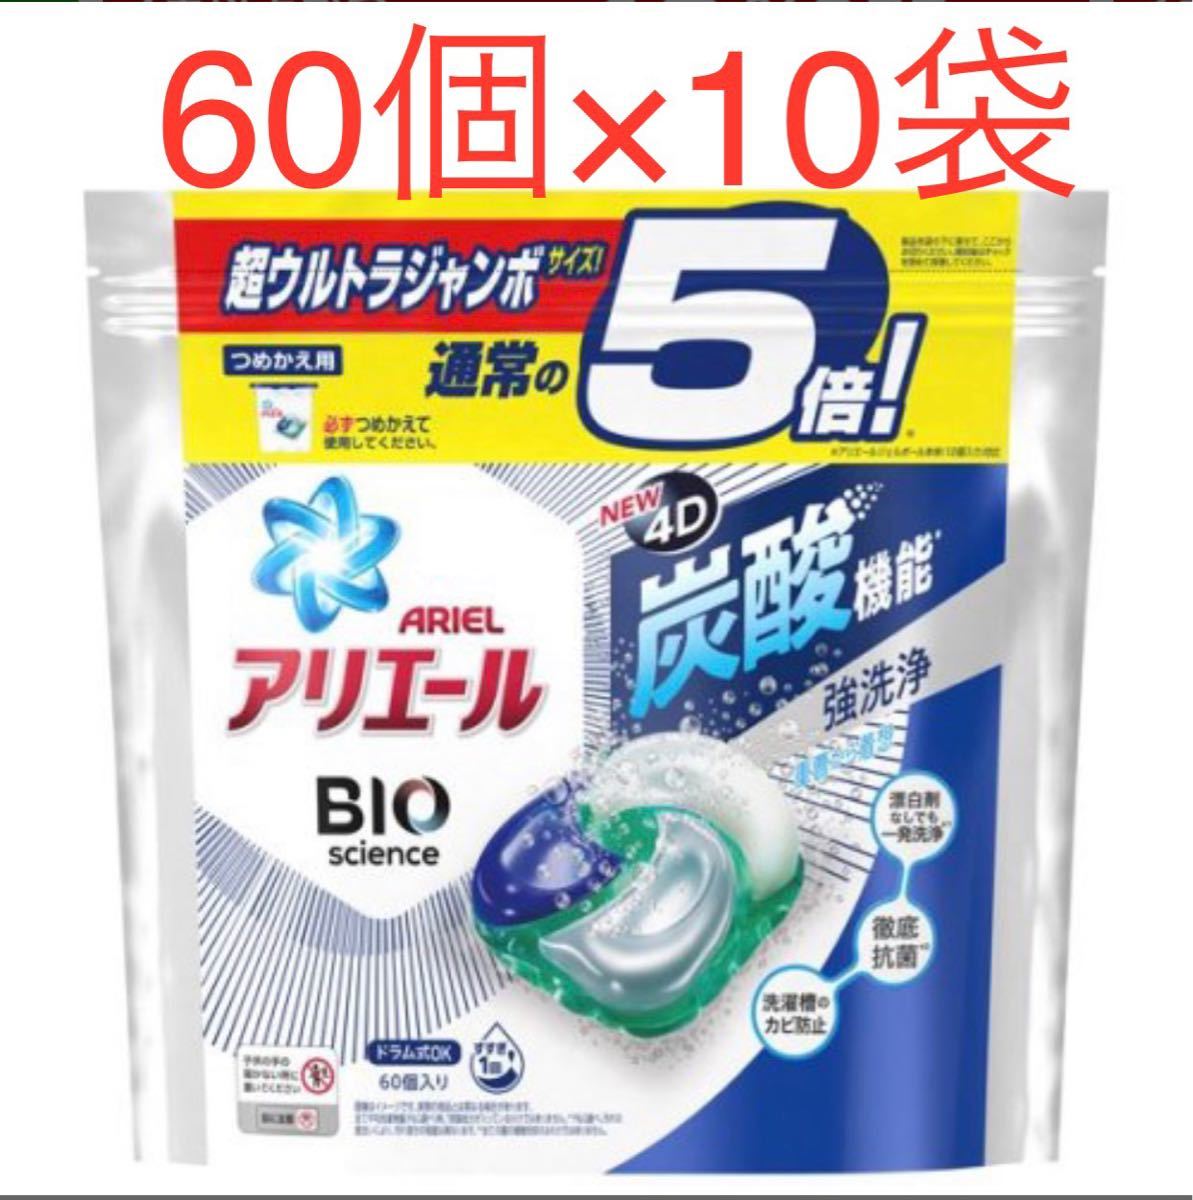 アリエール ジェルボール4D 洗濯洗剤 清潔で爽やかな香り 詰め替え(60個入*10袋セット)